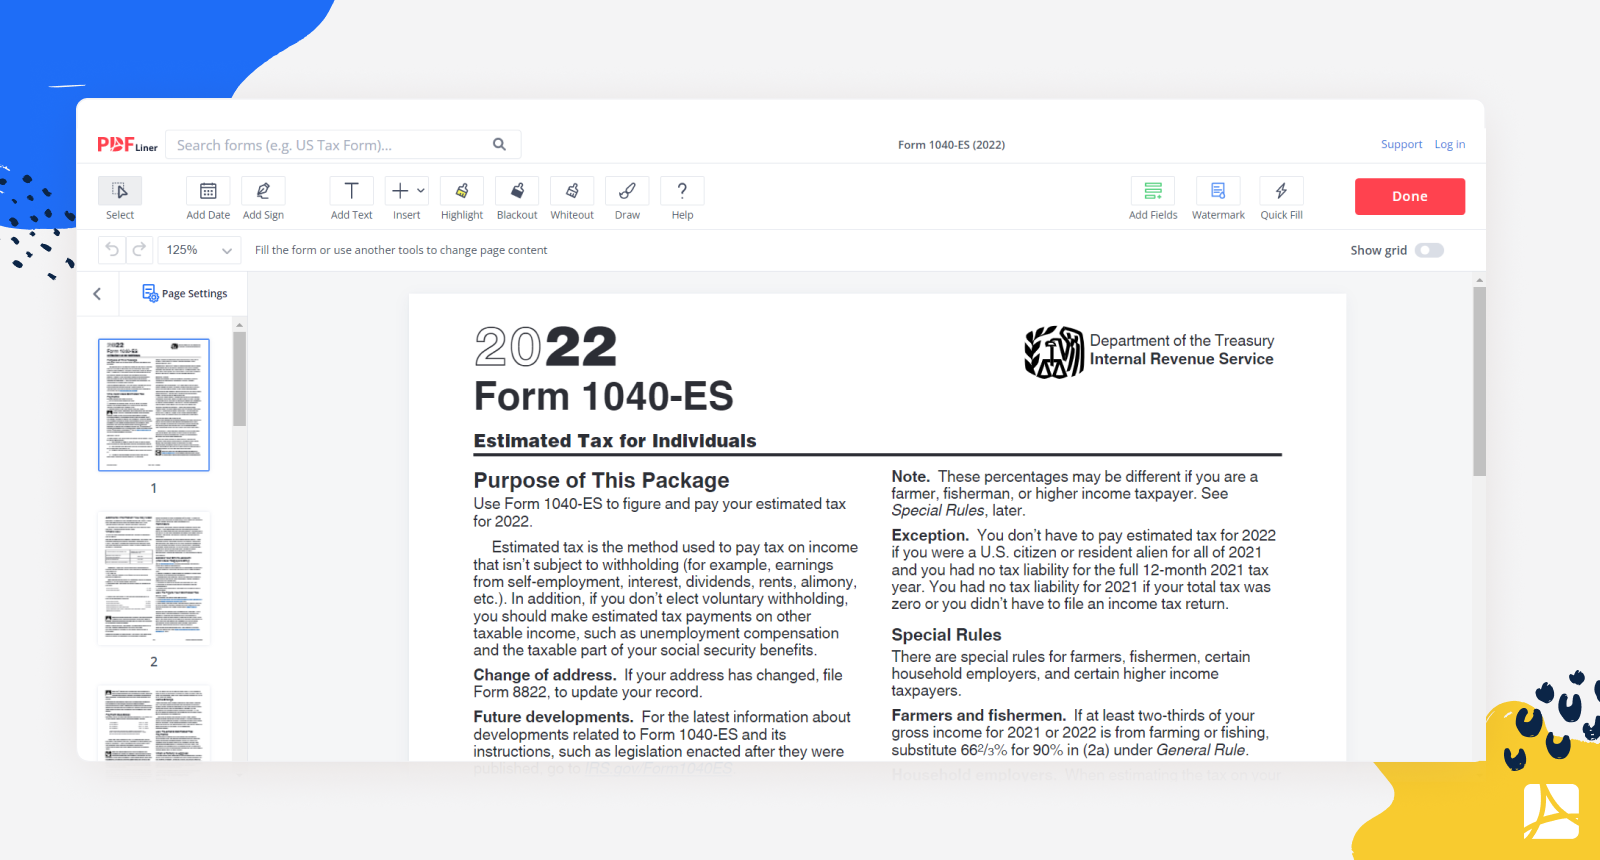 Form 1040-ES on PDFLiner